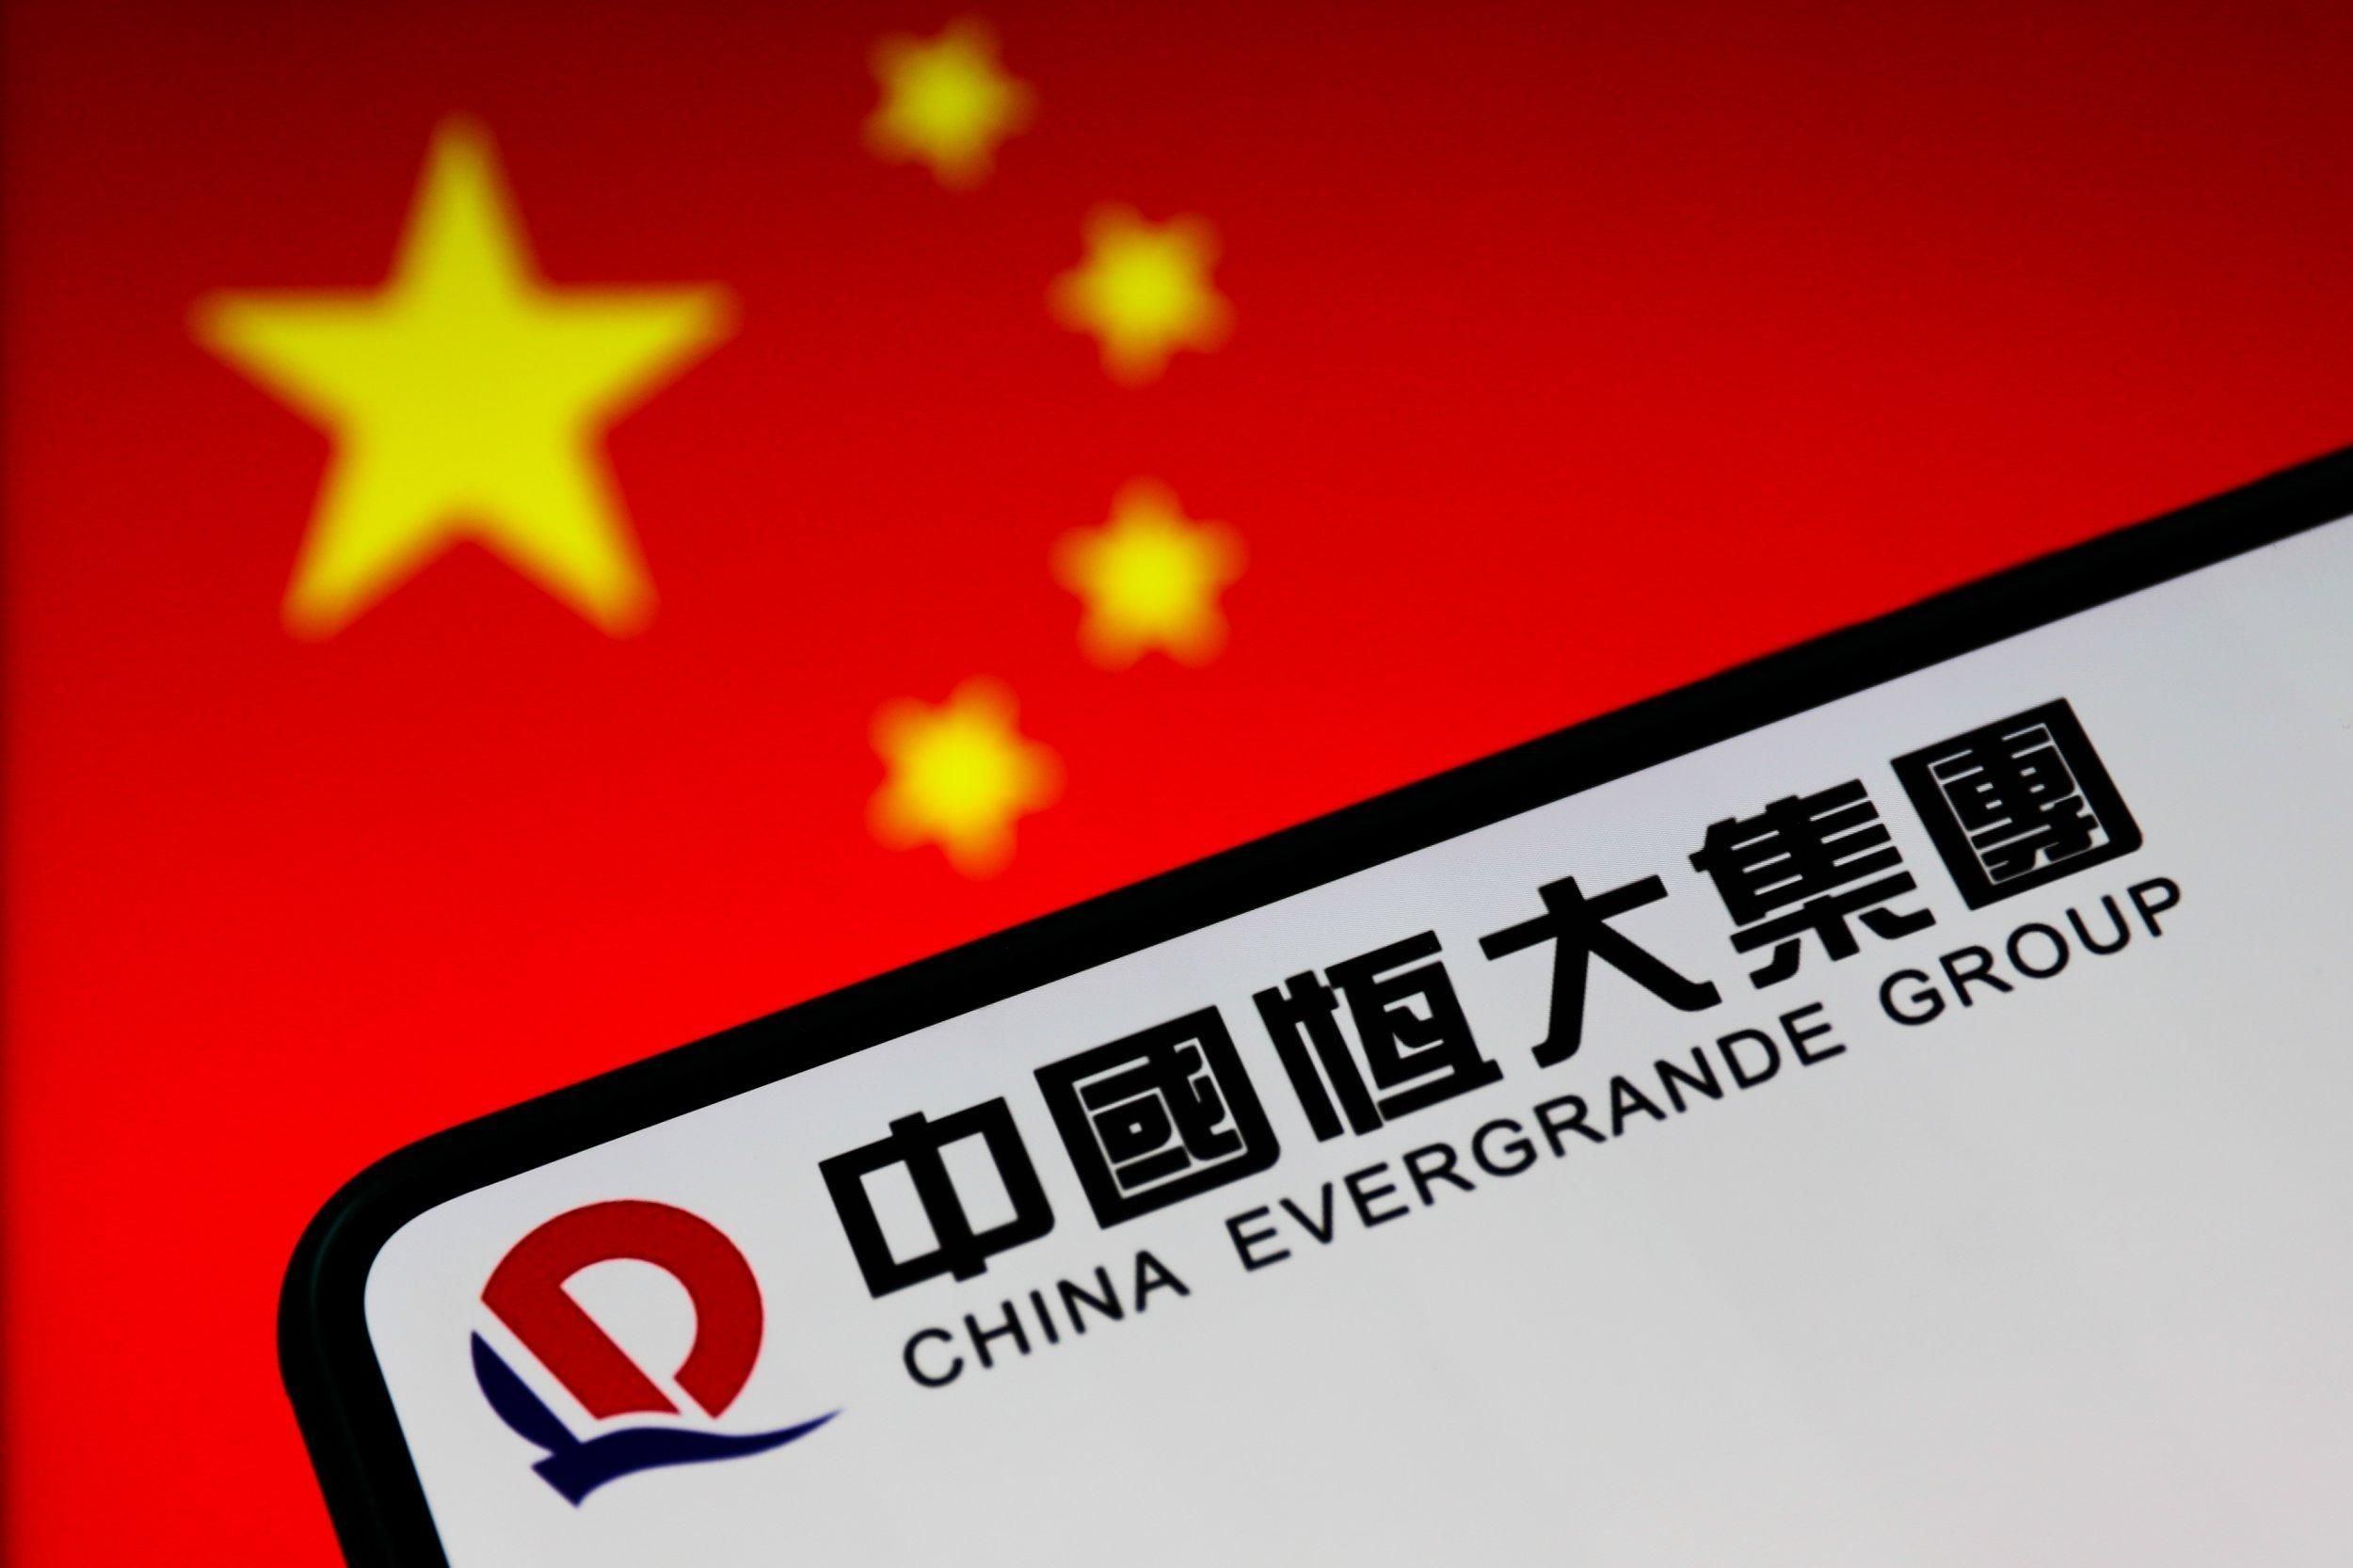 Китайська компанія Evergrande оголосила дефолт: як це може вплинути на ринок - Фінанси